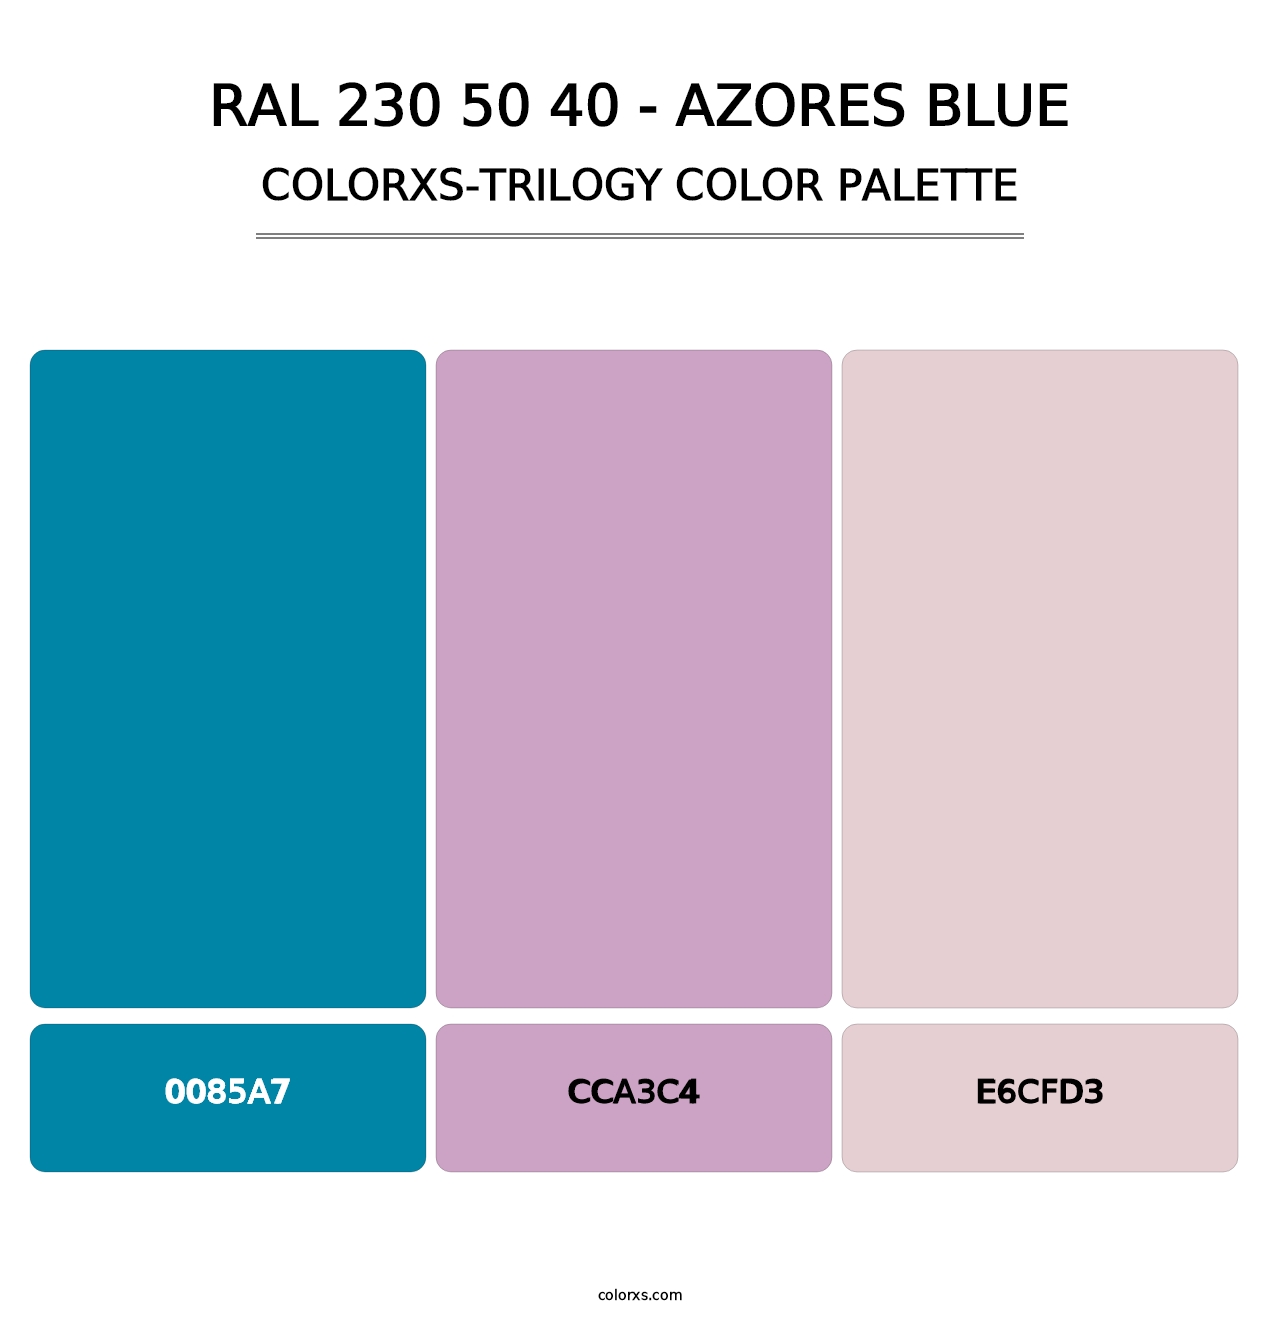 RAL 230 50 40 - Azores Blue - Colorxs Trilogy Palette